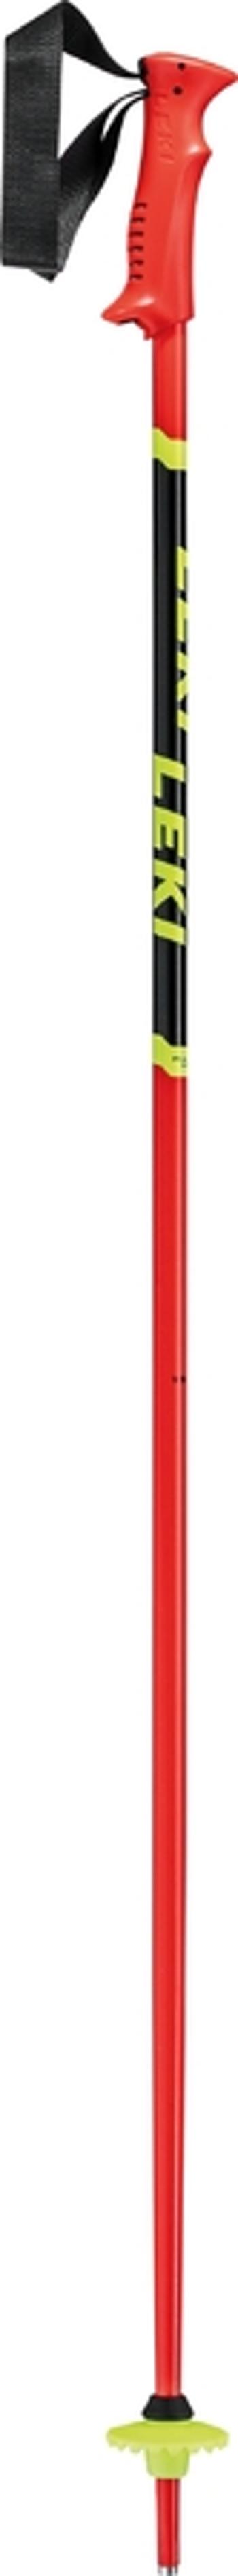 Stâlpi de coborâre Leki Curse Copii fluorescent rosu-negru-neongalben 65044301